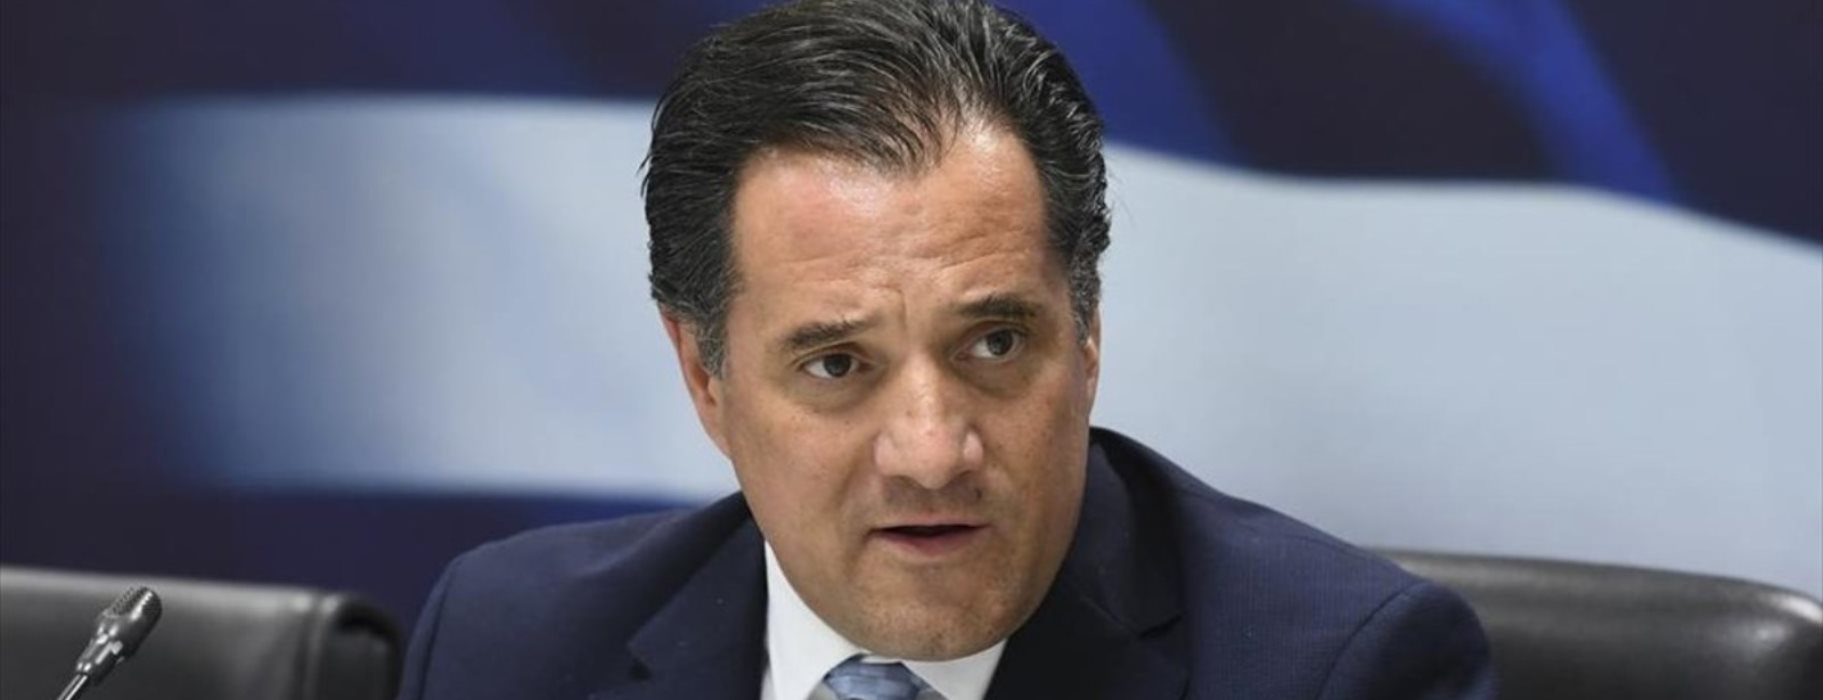 Ανάσταση στο σπίτι! – O υπουργός Ανάπτυξης Α.Γεωργιάδης επιβεβαιώνει το pronews.gr: «Δεν θα υπάρξει πασχαλινή έξοδος»!